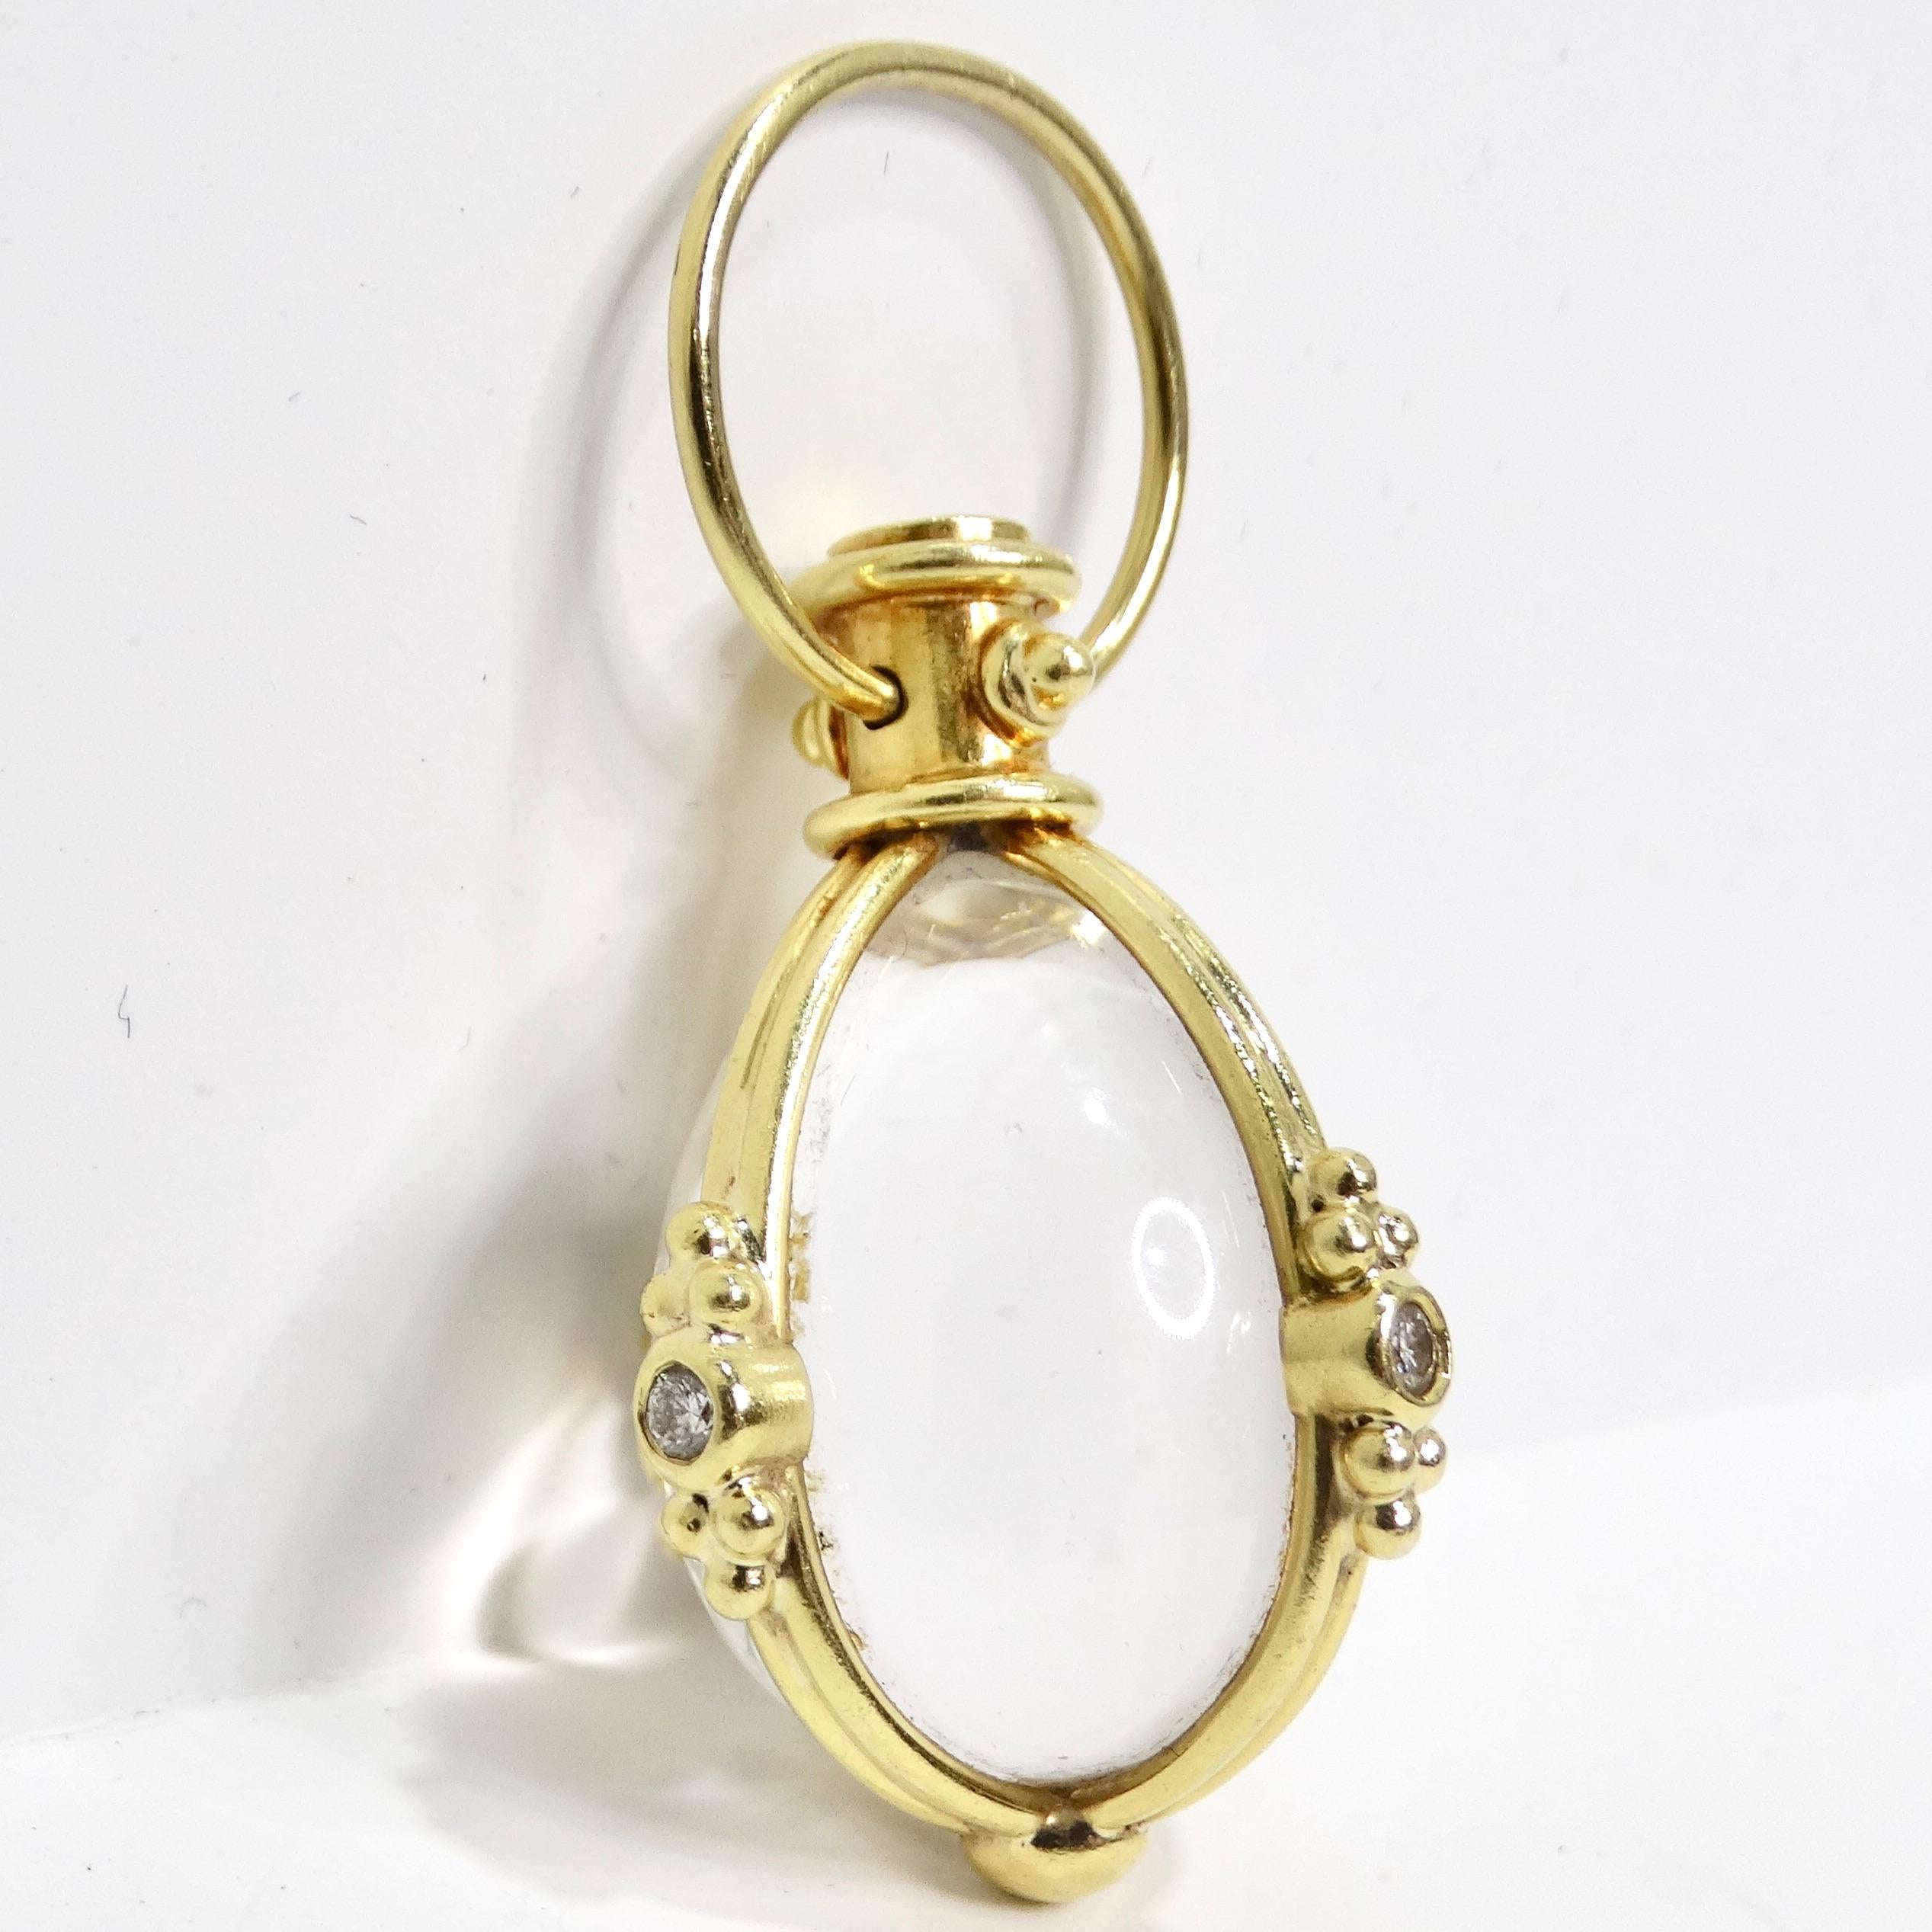 Voici l'amulette Temple St Clair 18K Diamond Classic, un pendentif élégant et simple, mais indéniablement glamour, qui capture l'essence de l'élégance intemporelle. Cette amulette de taille moyenne témoigne de l'engagement du Temple St Clair en